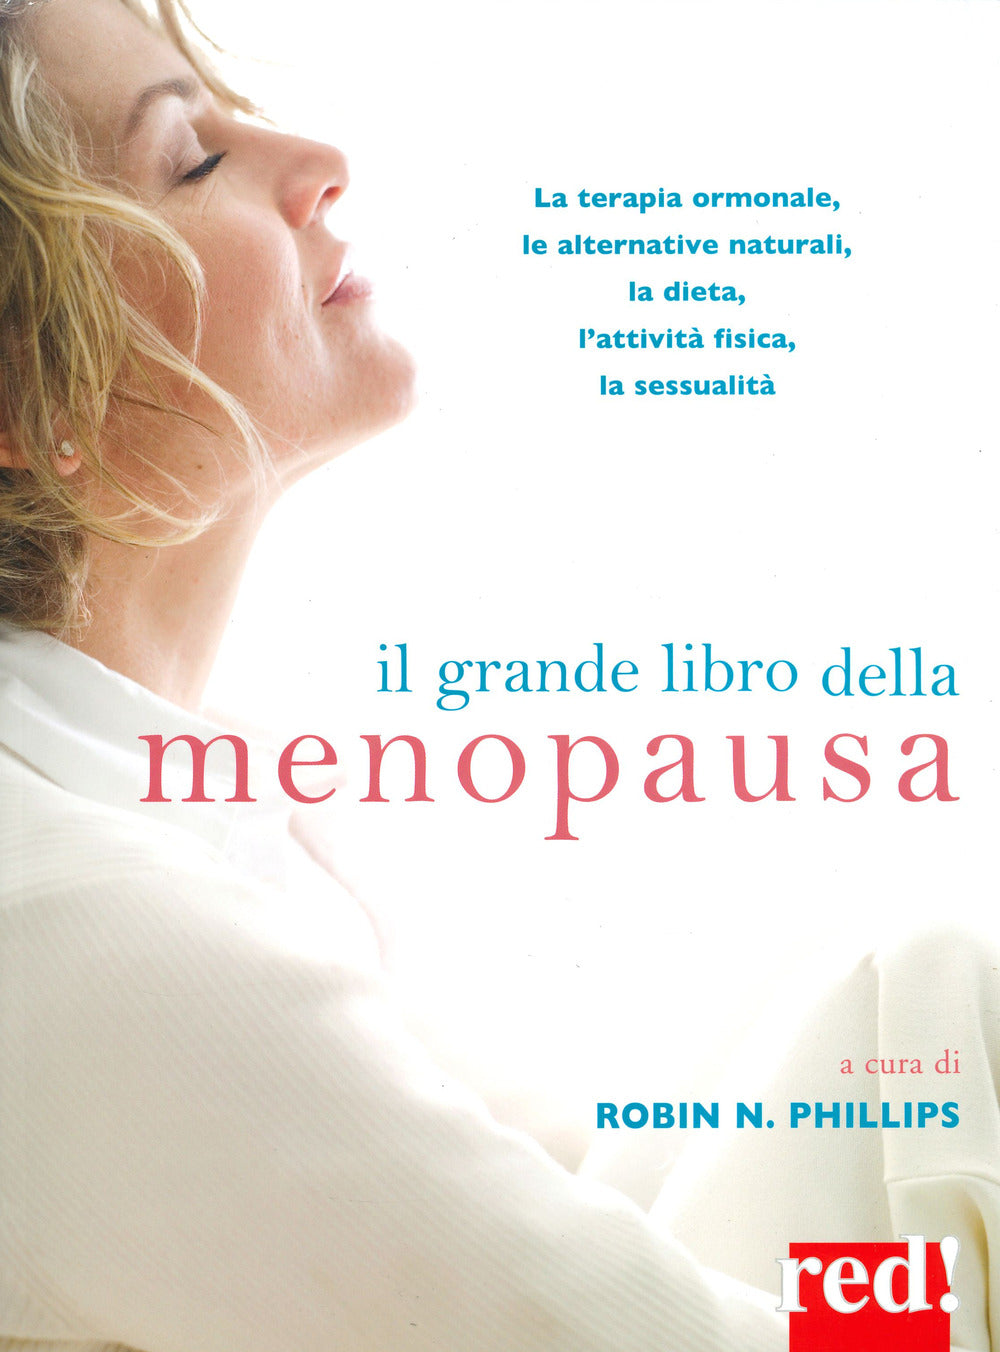 Il grande libro della menopausa. La terapia ormonale, le alternative naturali, la dieta, l'attività fisica, la sessualità.